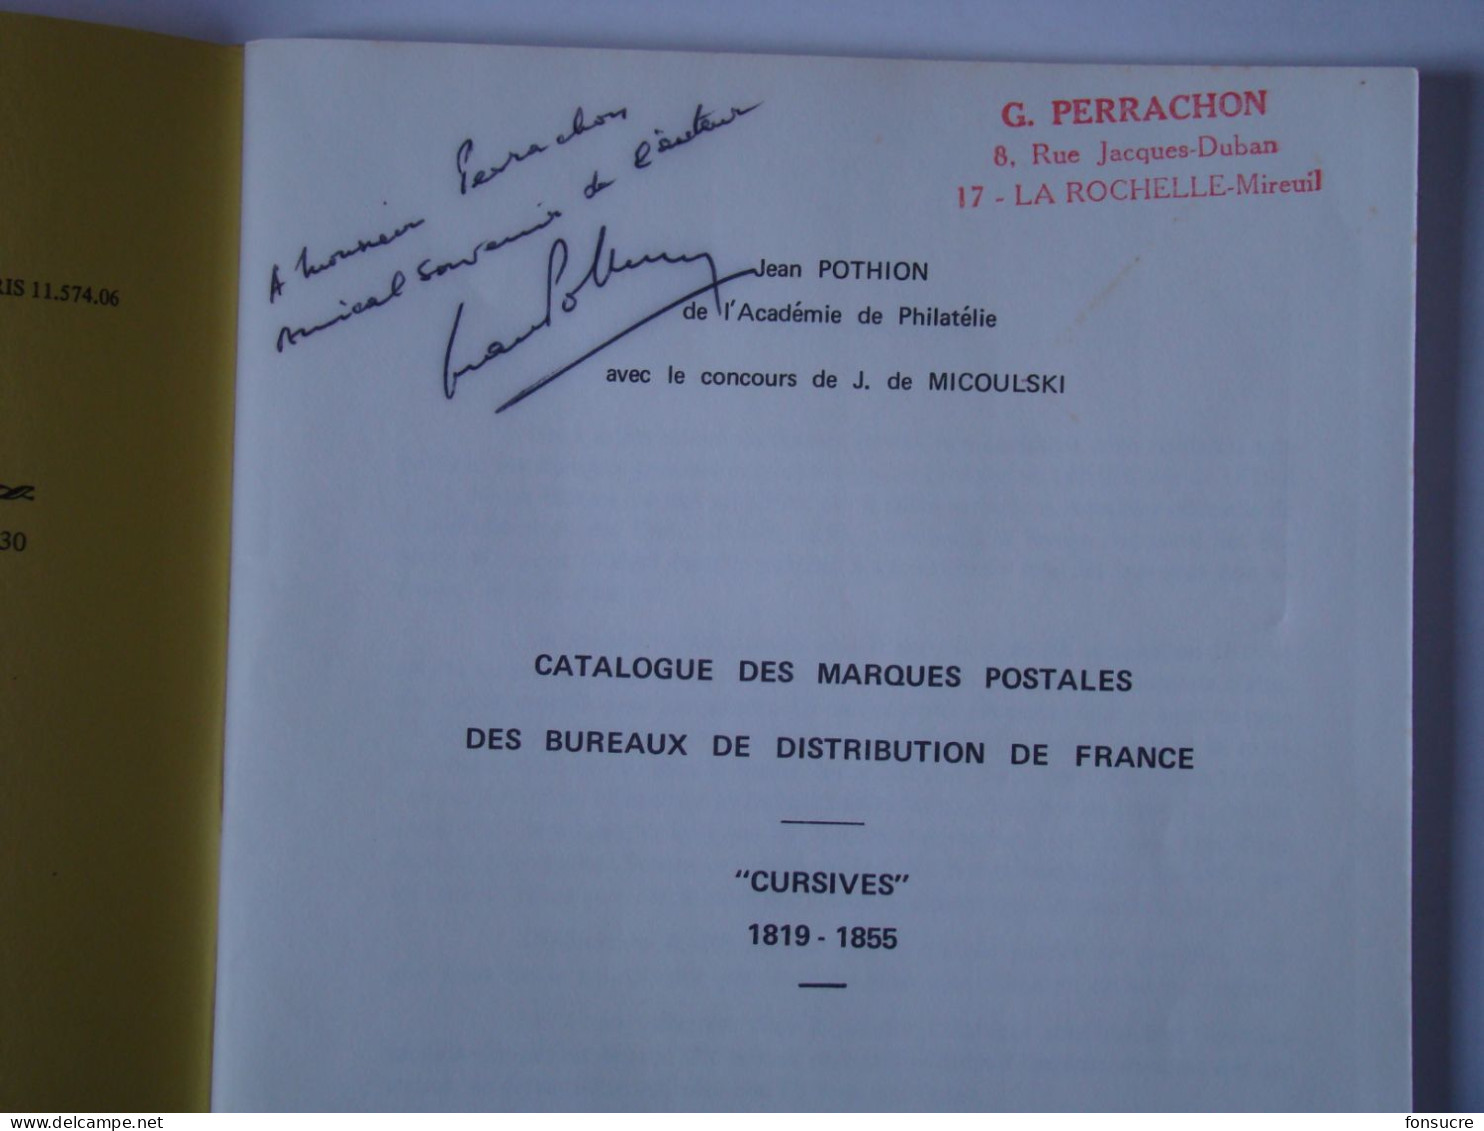 Catalogue Dédicacé Marques Postales Des Bureaux De Distribution De France Cursives 1819-55  J. POTHION  42 Pages 1968 - Frankreich